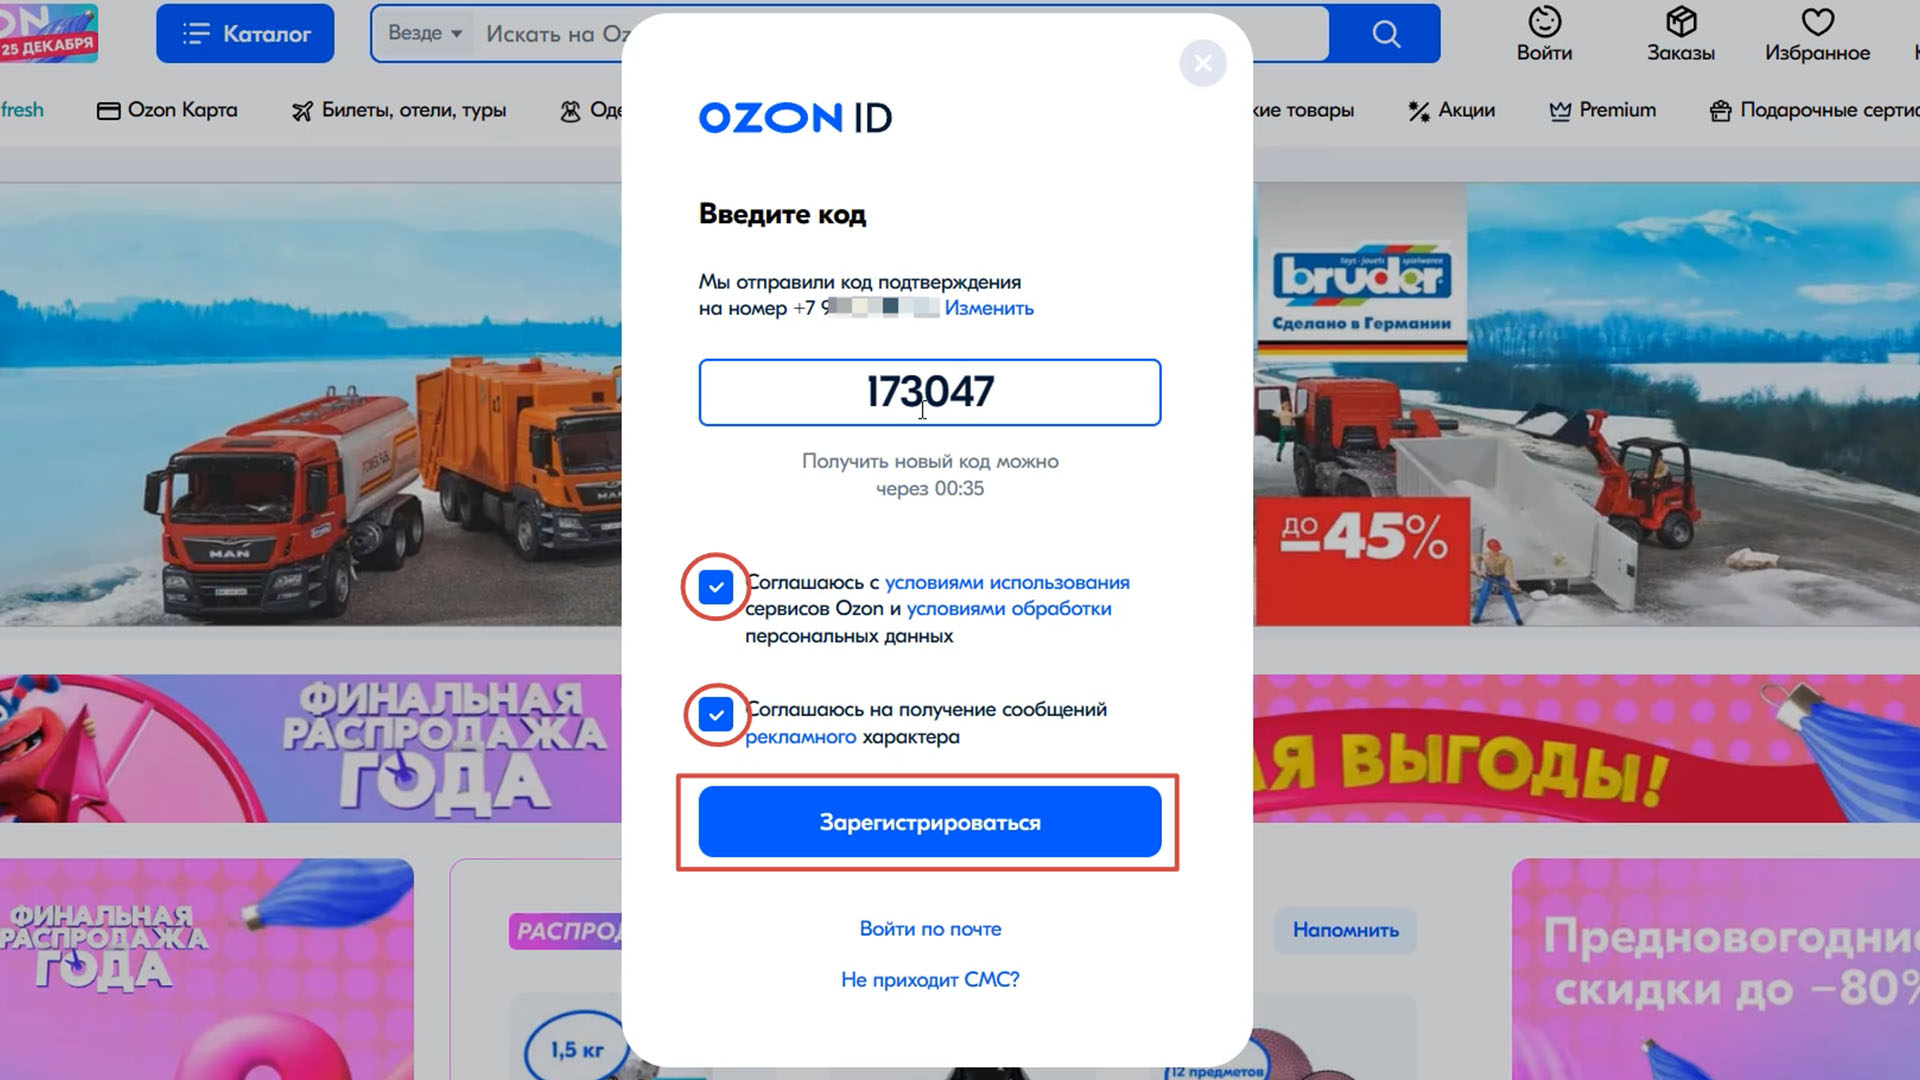 Скриншот экрана компьютера с окном для ввода кода при регистрации на OZON.